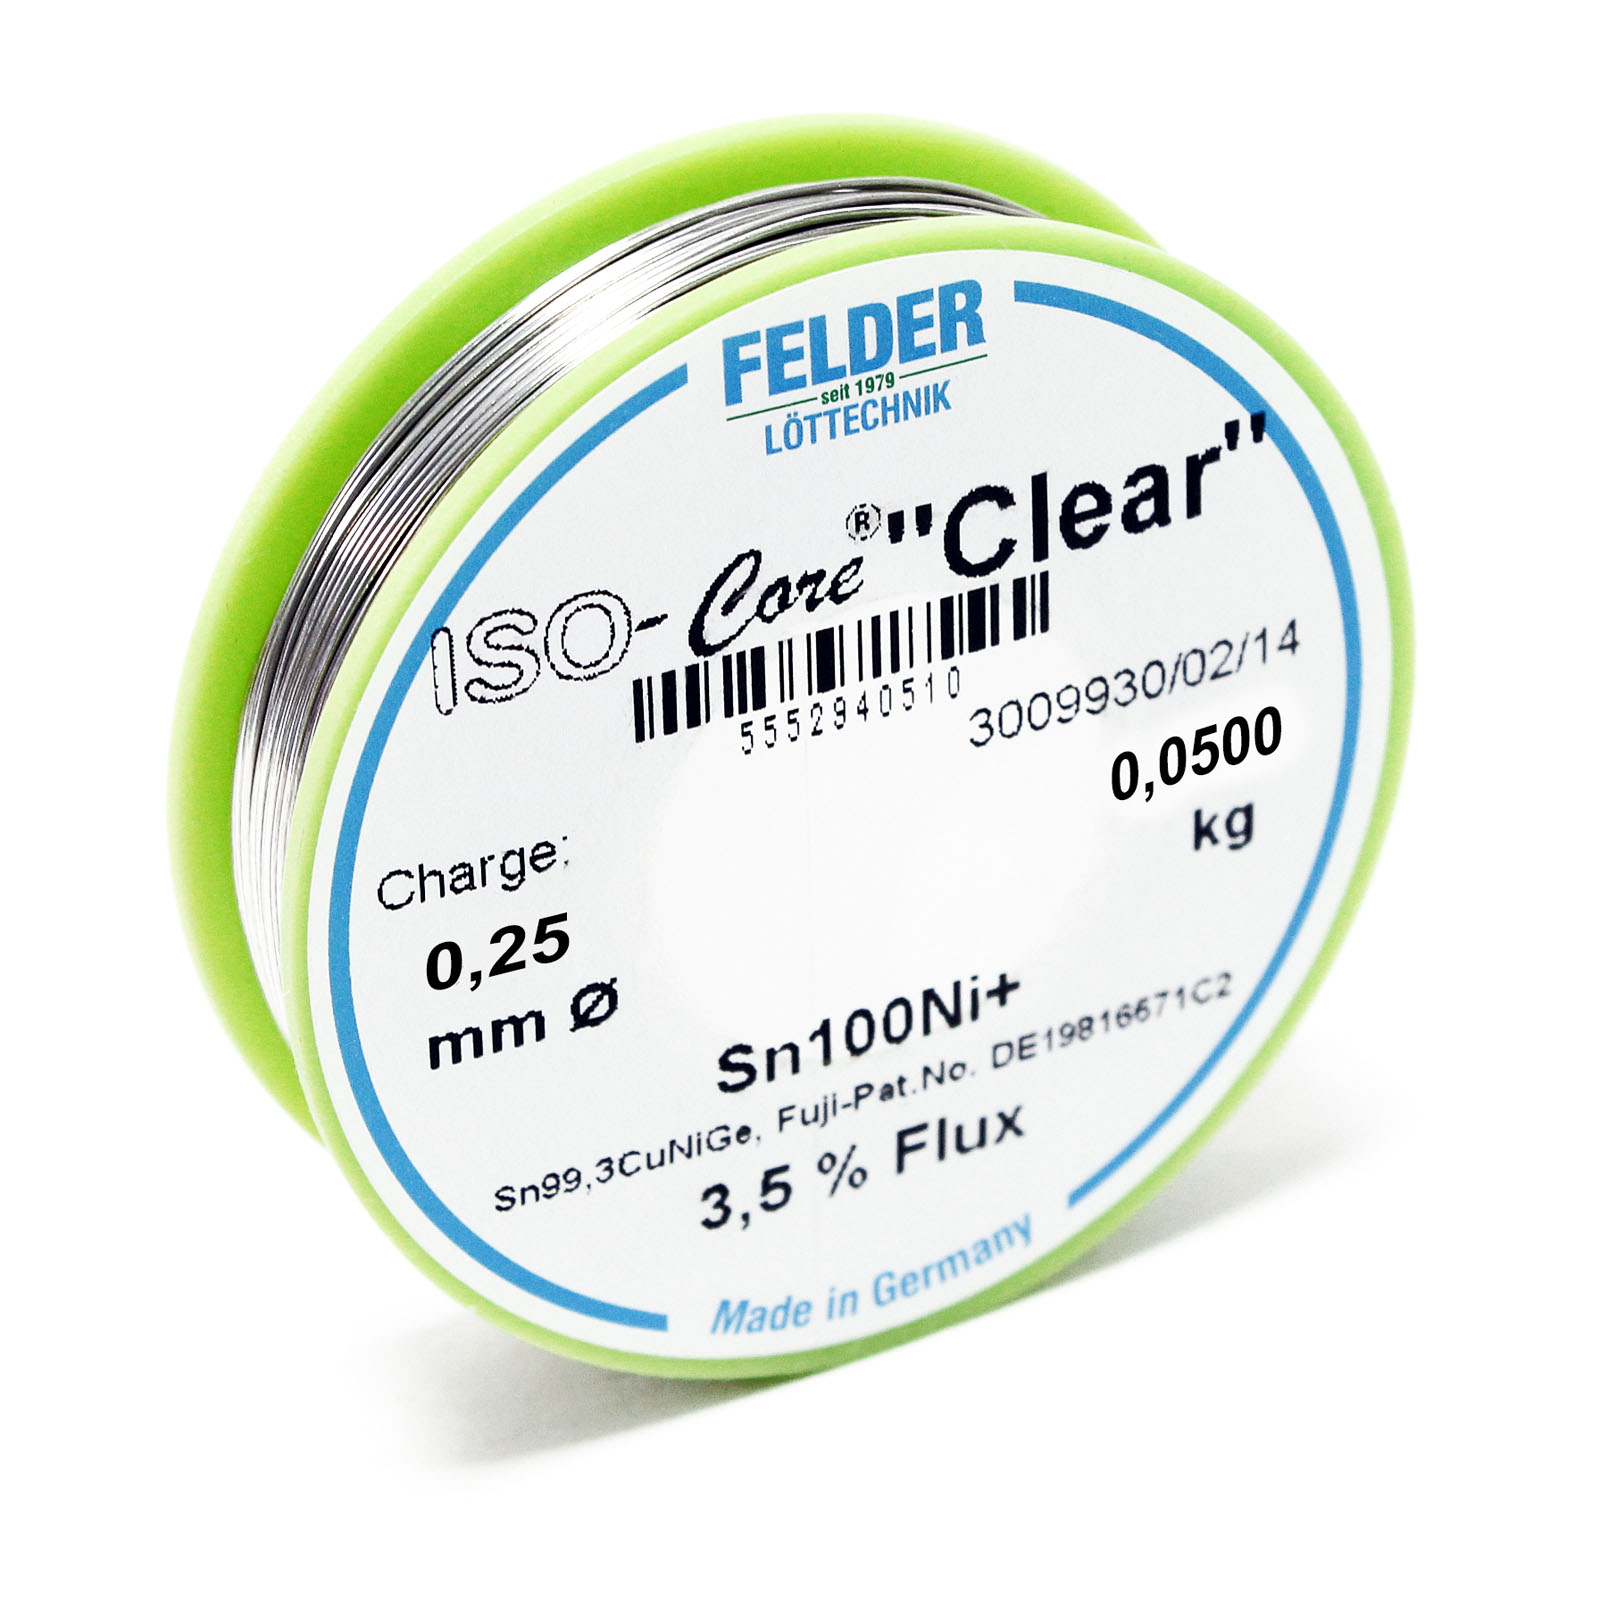 Felder Lötdraht ISO-Core "Clear" Sn100Ni+ Sn99,3CuNiGe 0.25mm 0.05kg